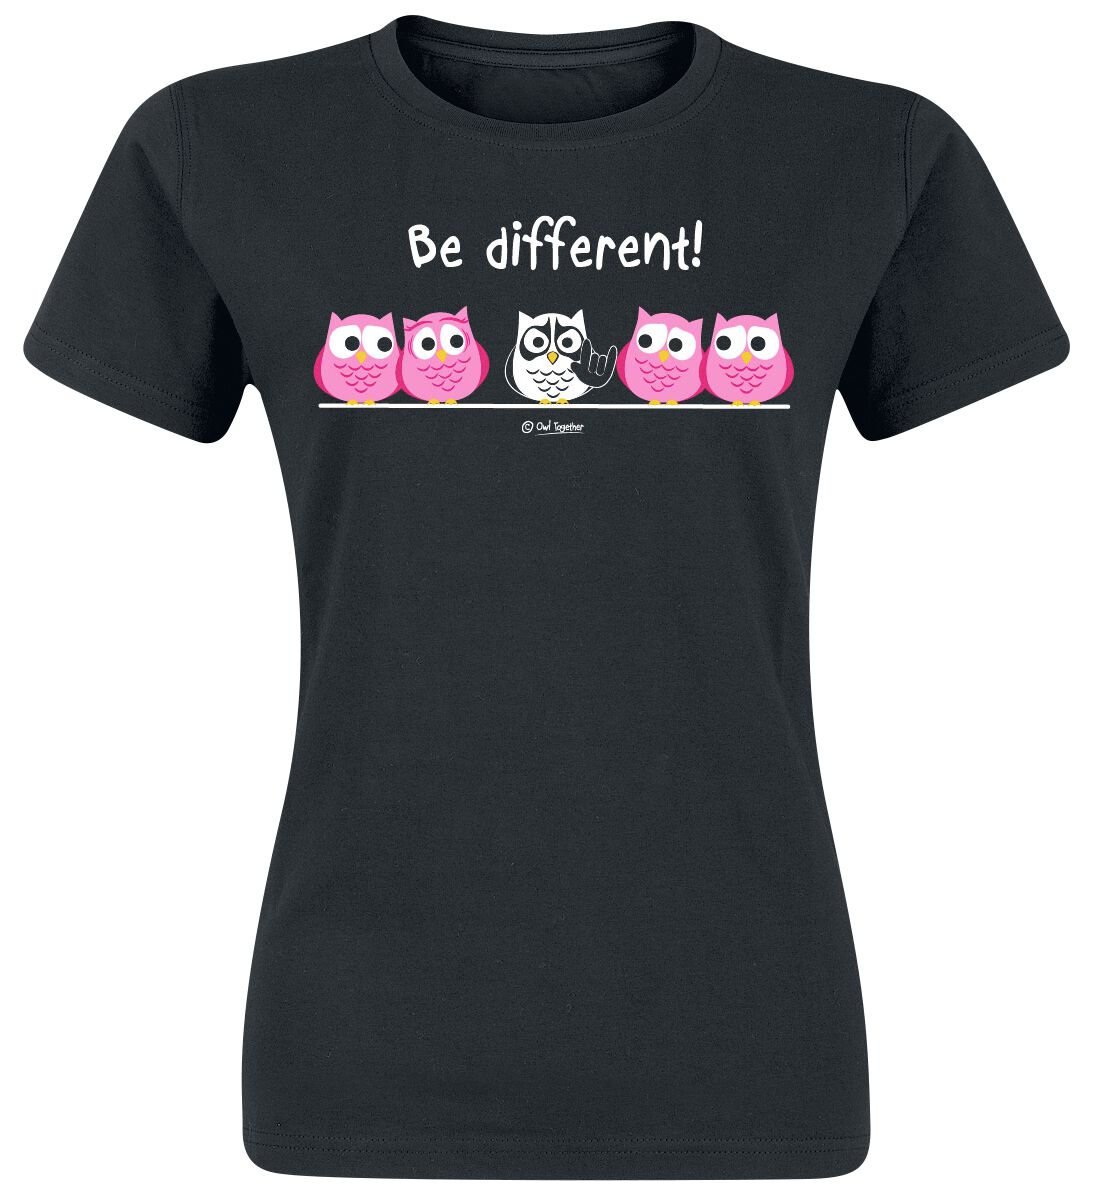 T-Shirt Manches courtes Fun de Be Different! - Be Different! - Metal - S à 3XL - pour Femme - noir